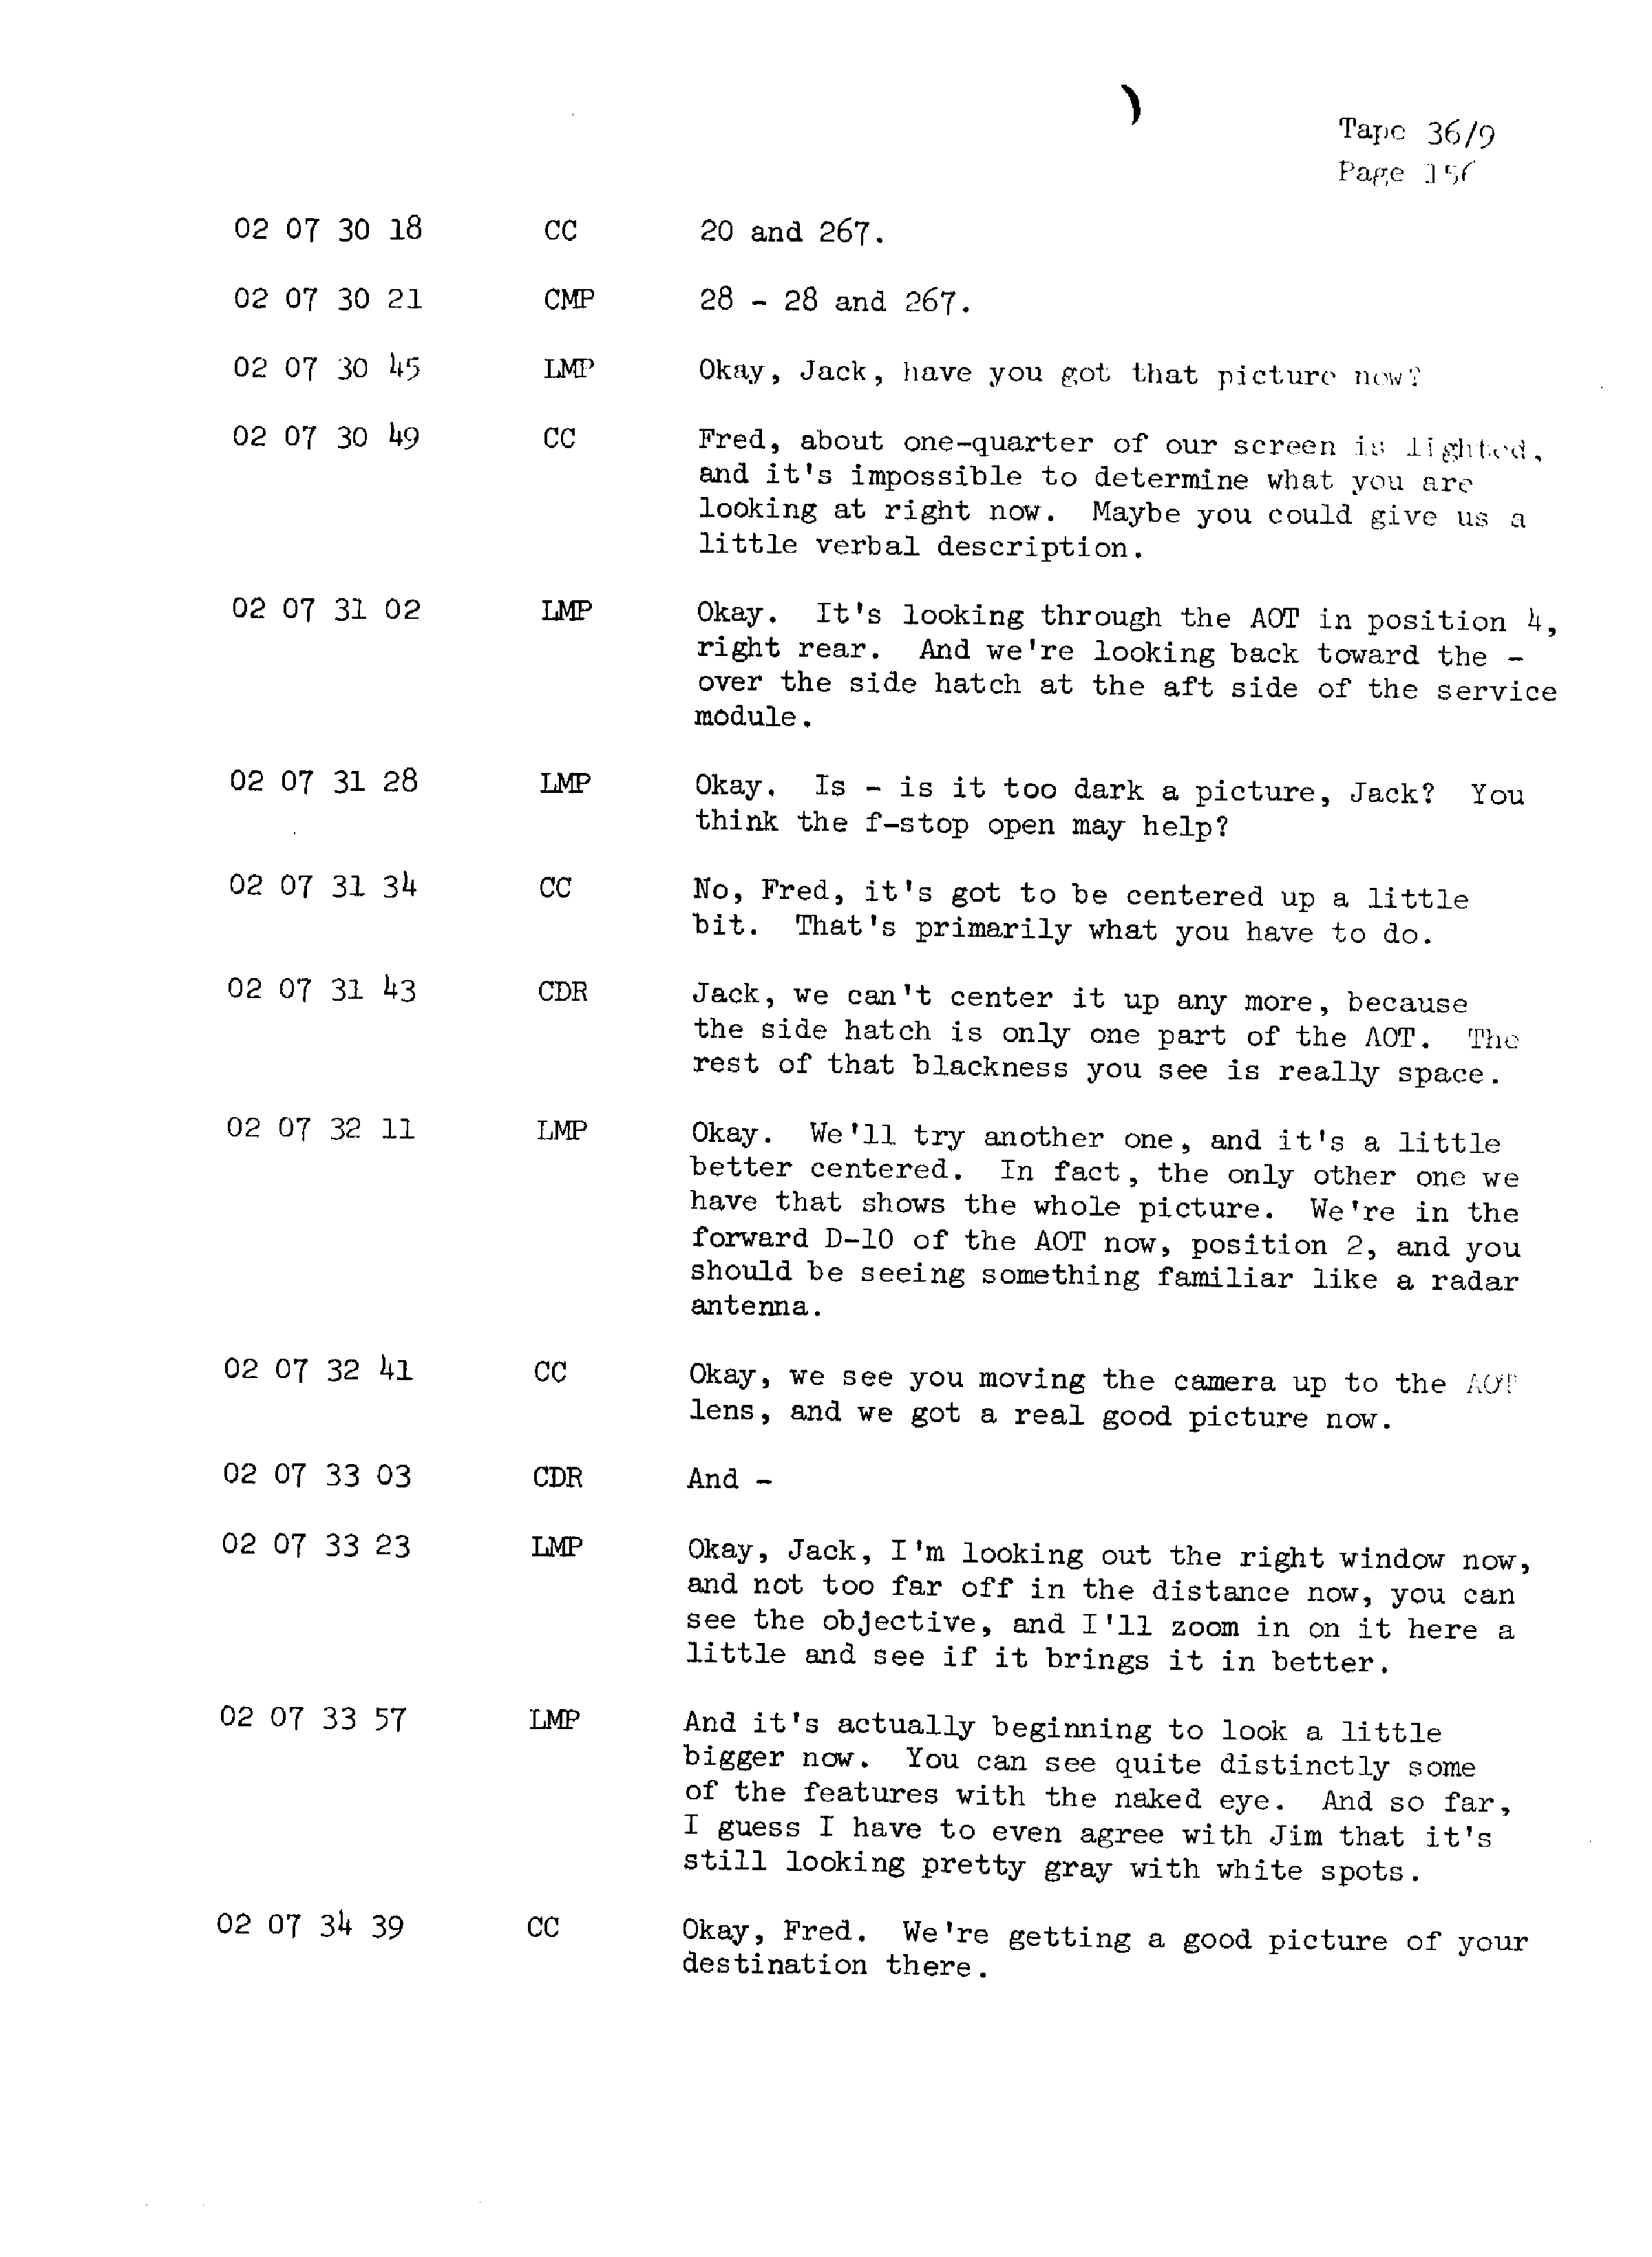 Page 163 of Apollo 13’s original transcript